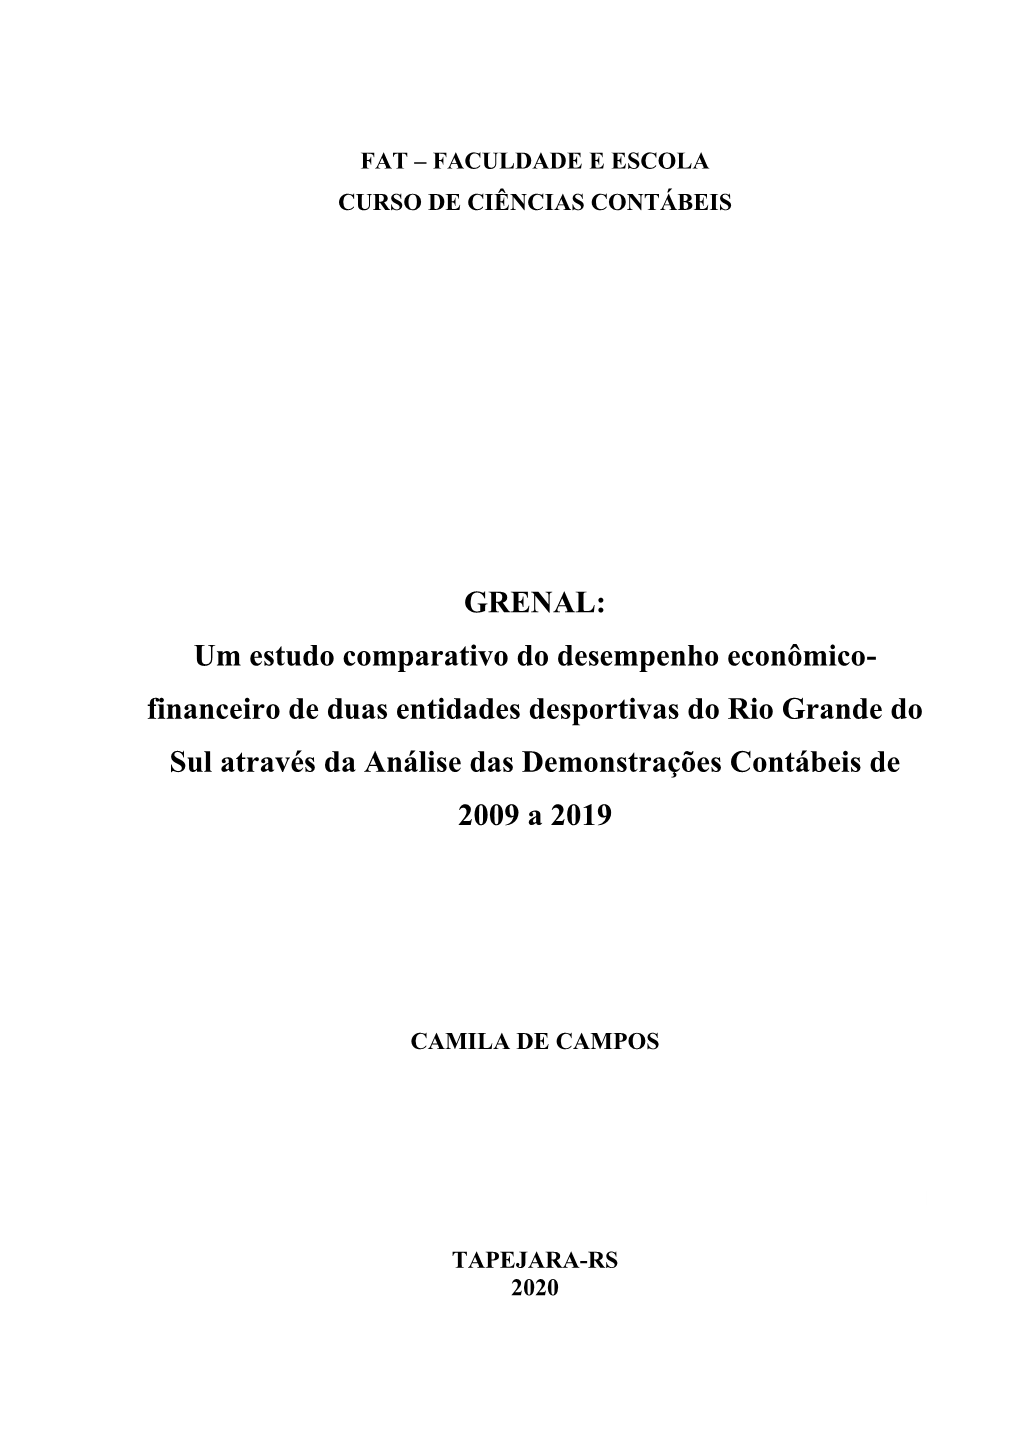 GRENAL: Um Estudo Comparativo Do Desempenho Econômico- Financeiro De Duas Entidades Desportivas Do Rio Grande Do Sul Através D